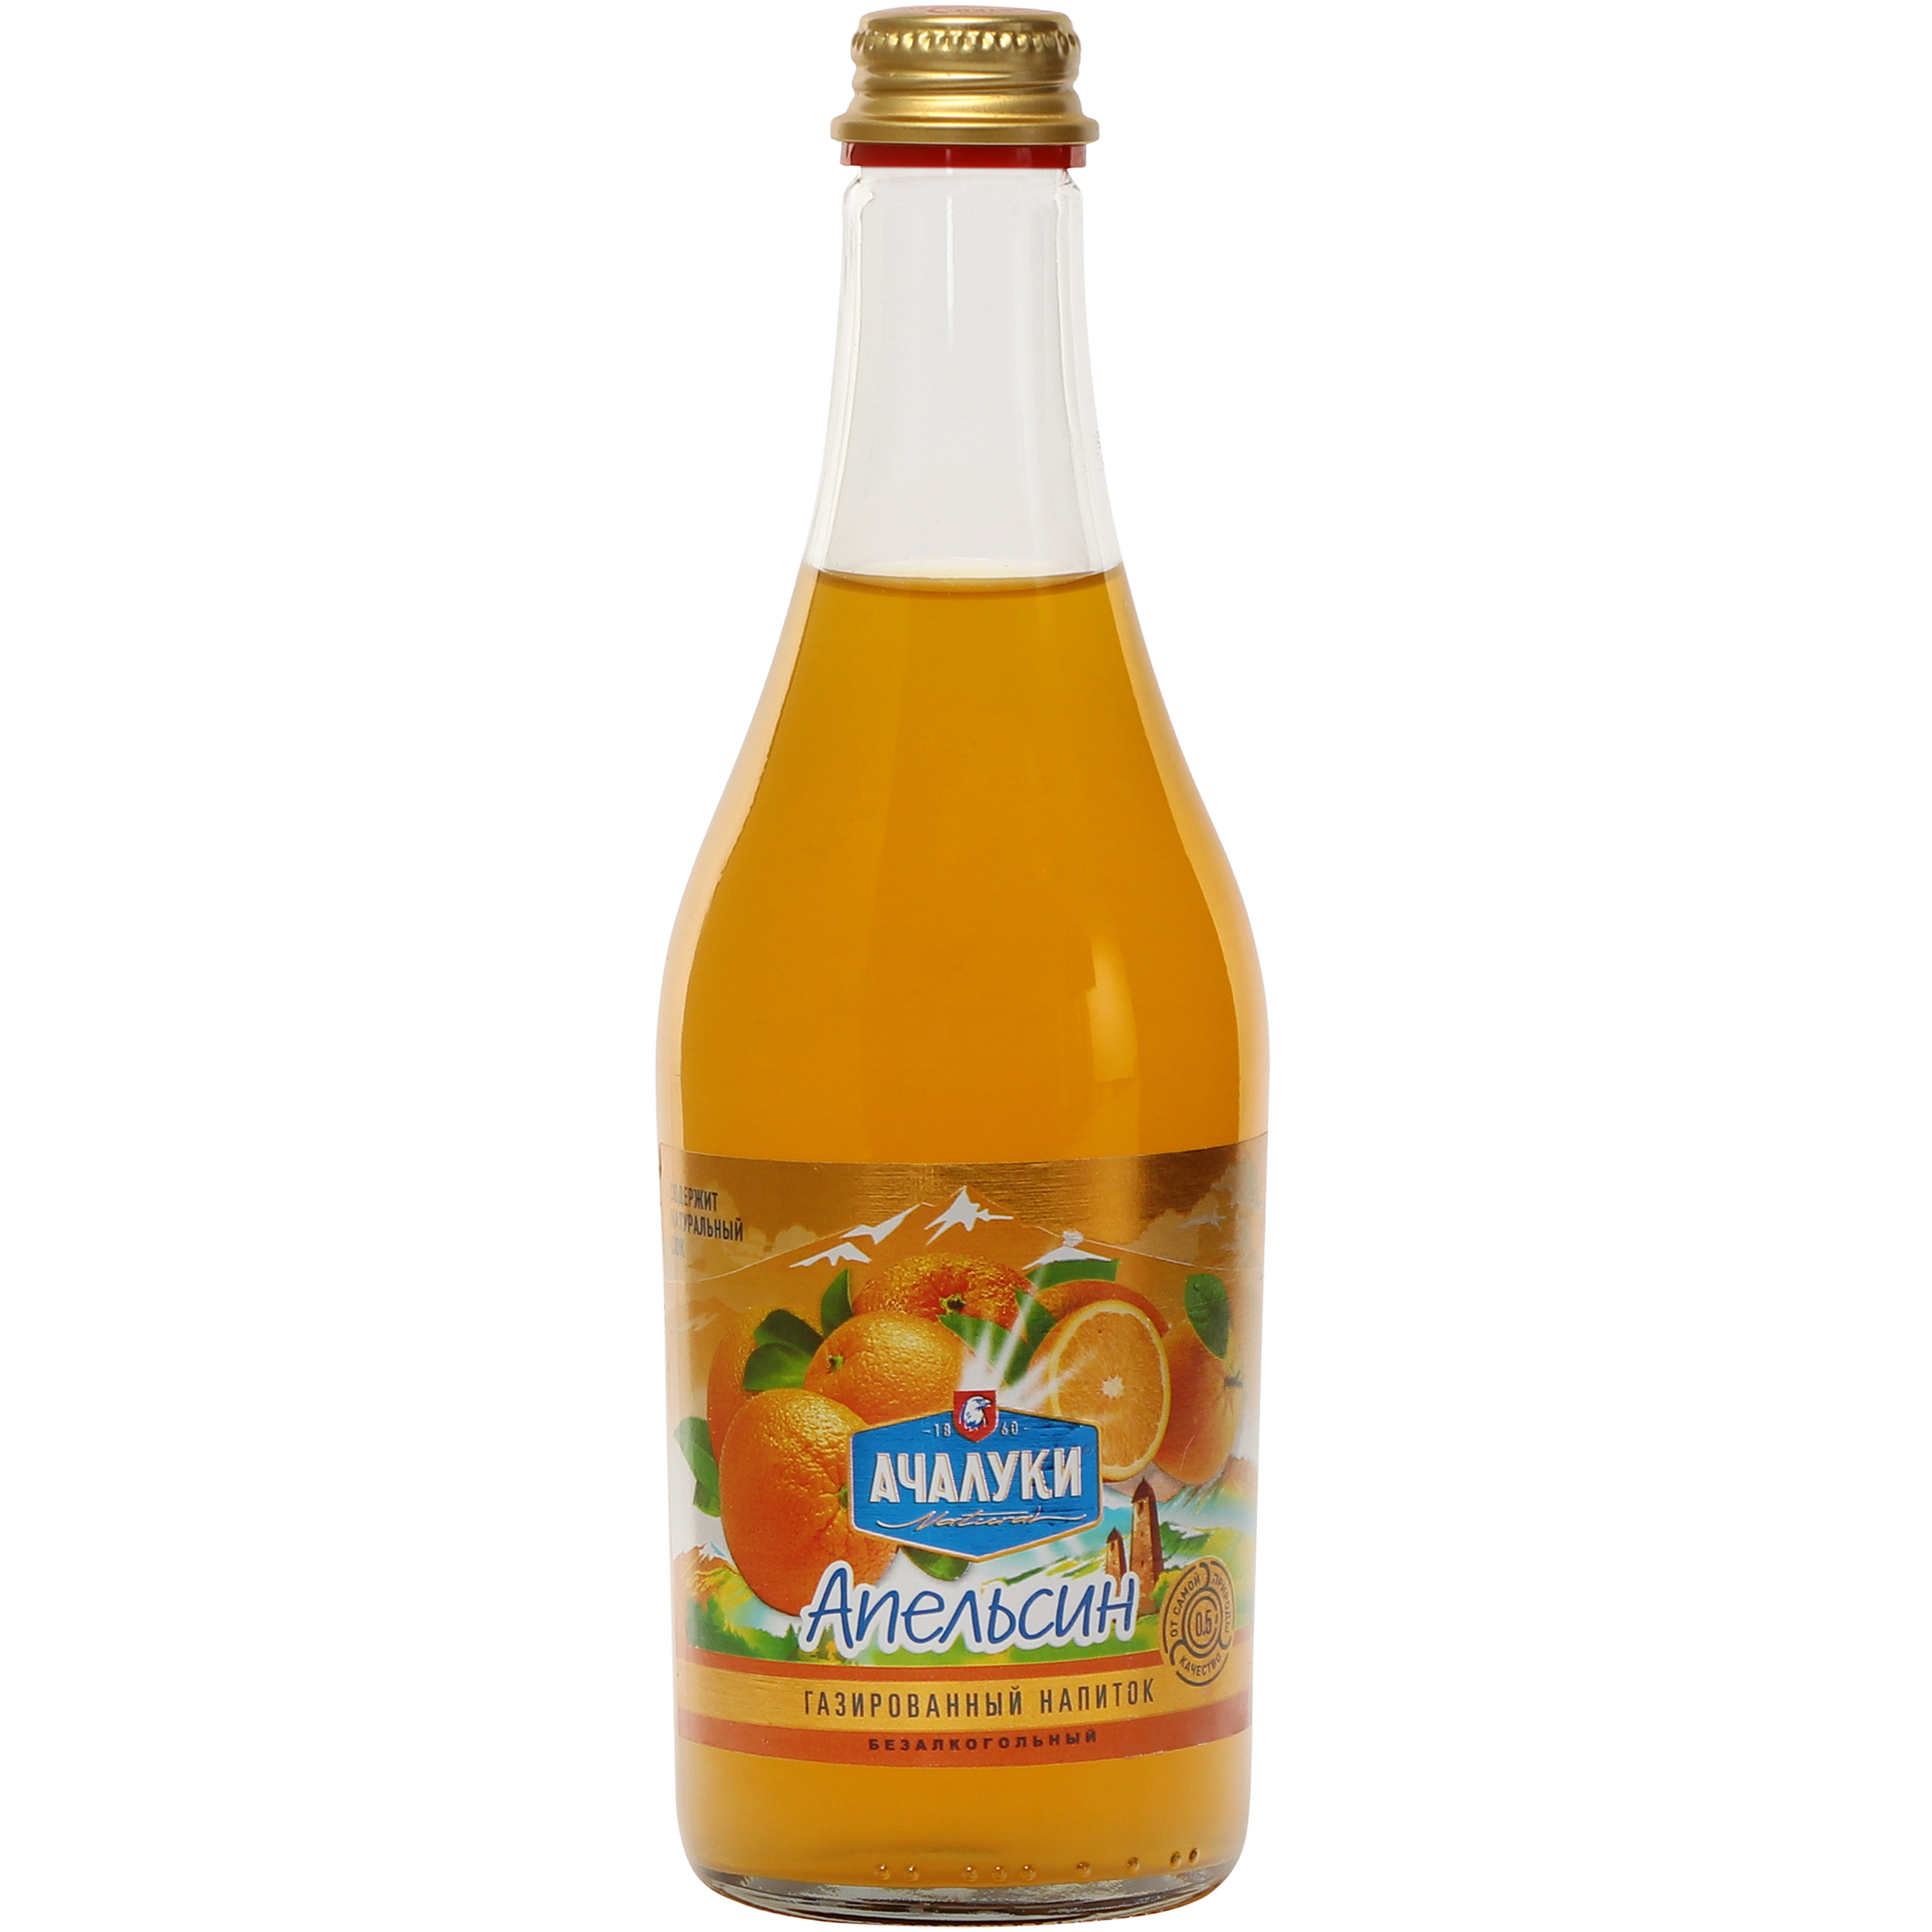 Напиток безалкогольный Ачалуки Апельсин газированный, 0,5 л напиток добрый апельсин 0 33 литра с витамином с газ ж б 12 шт в уп